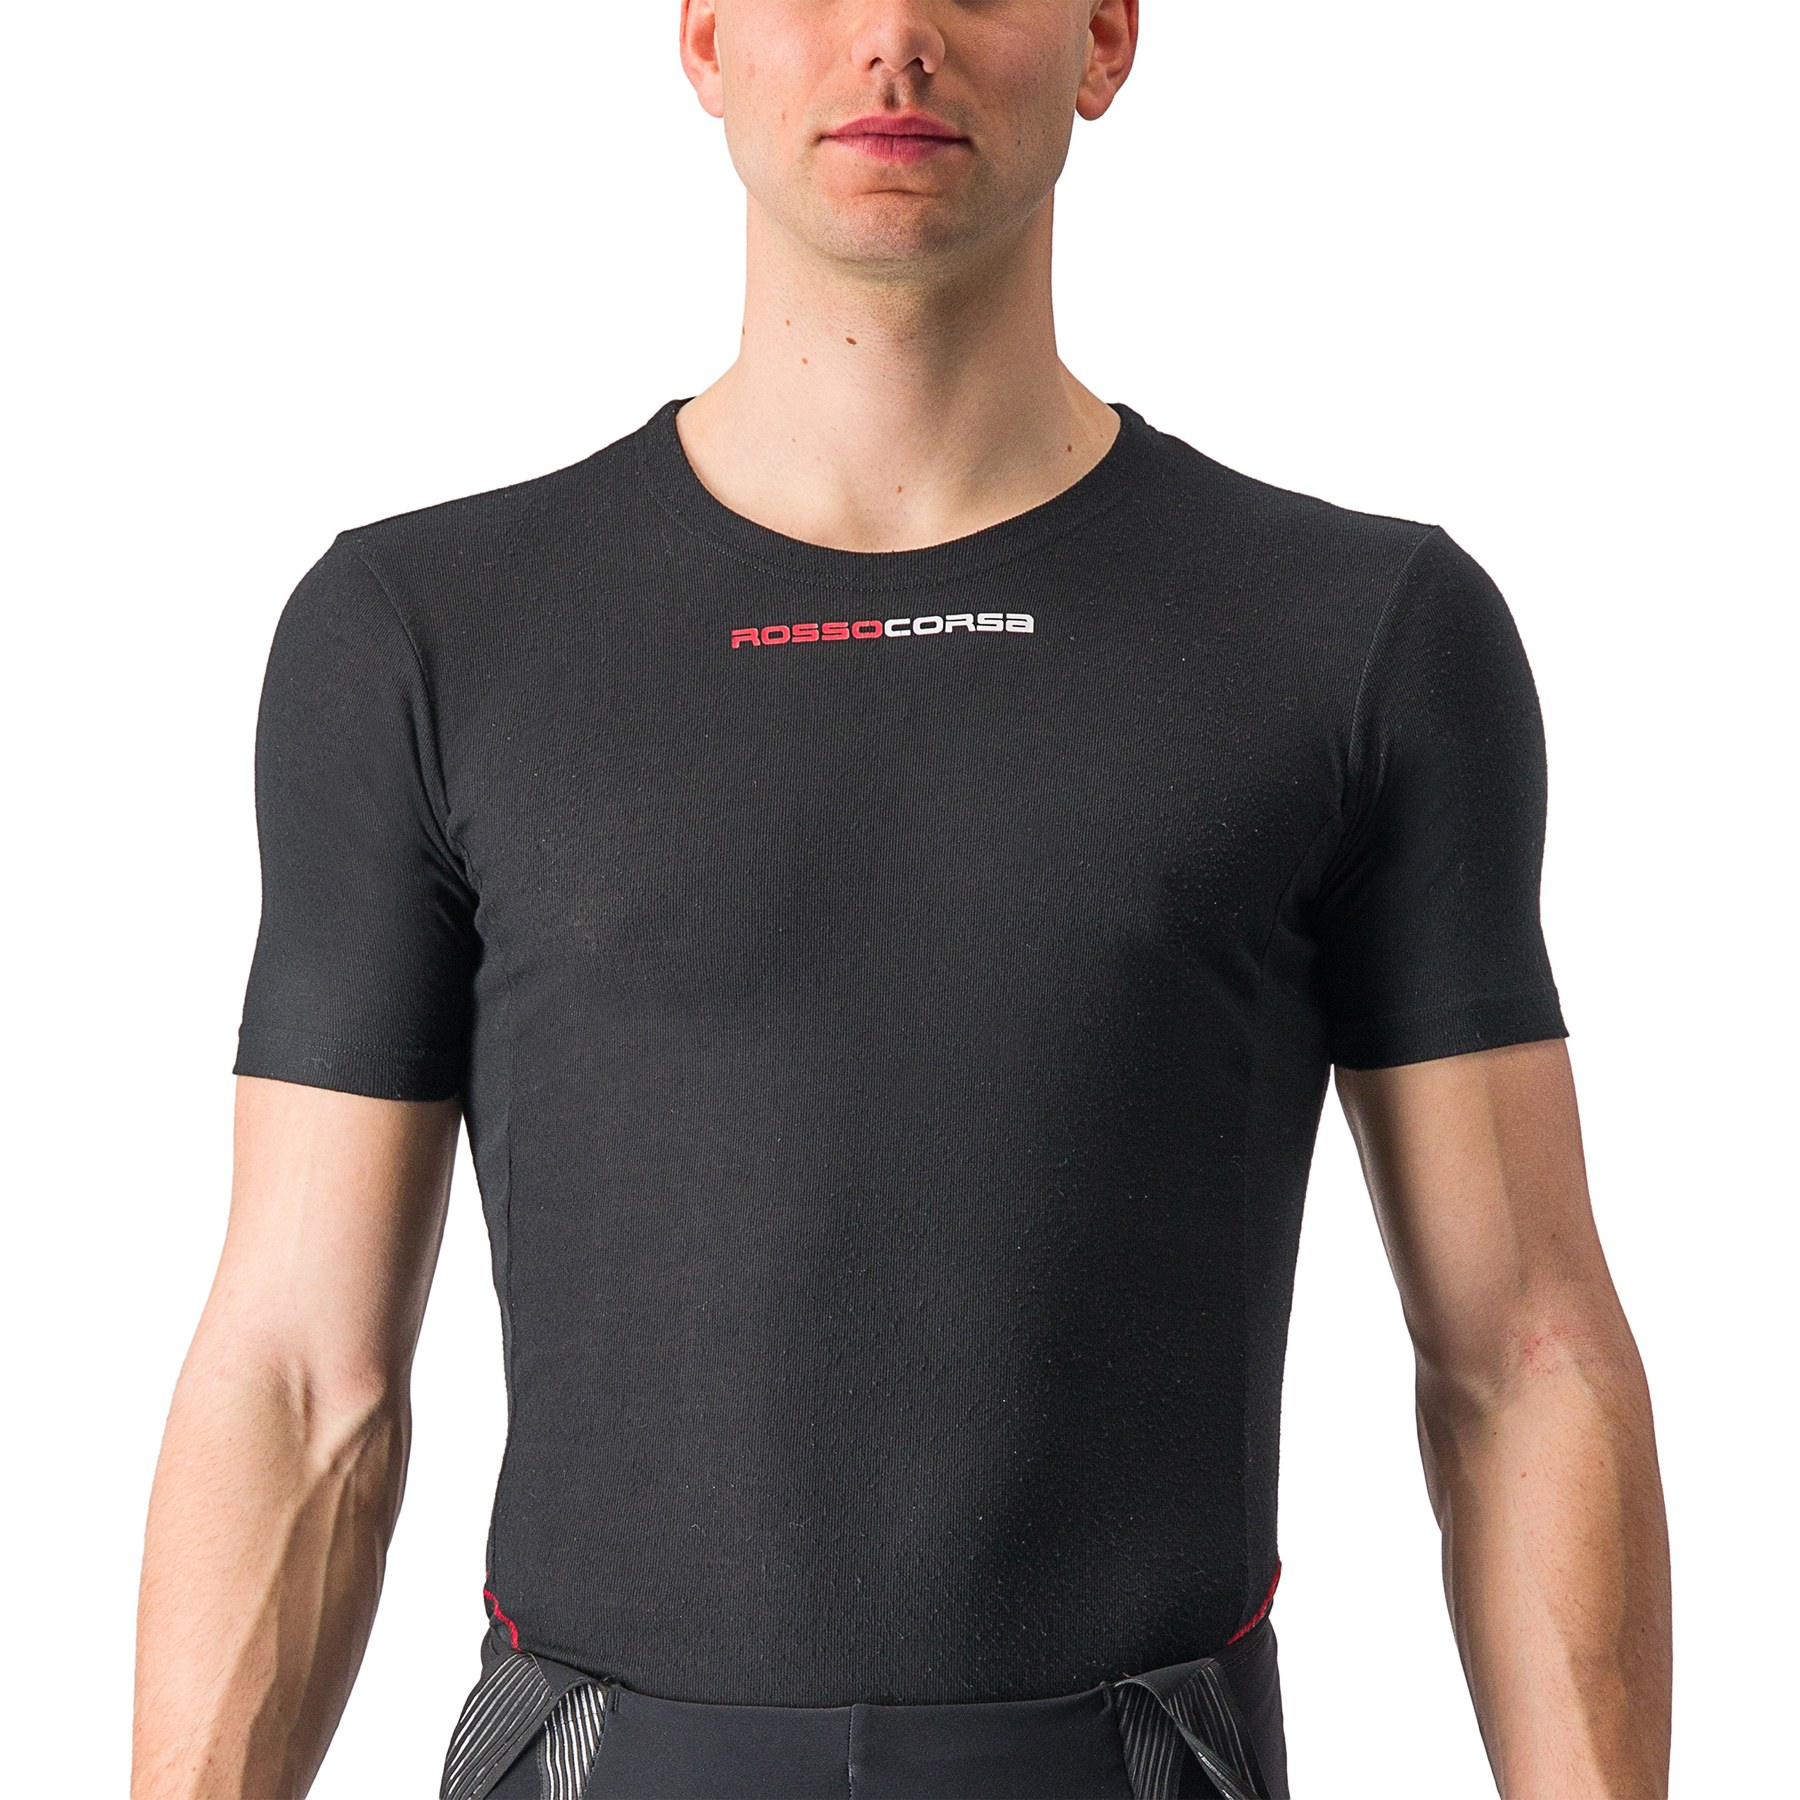 Produktbild von Castelli Prosecco Tech Short Sleeve Unterhemd - black 010